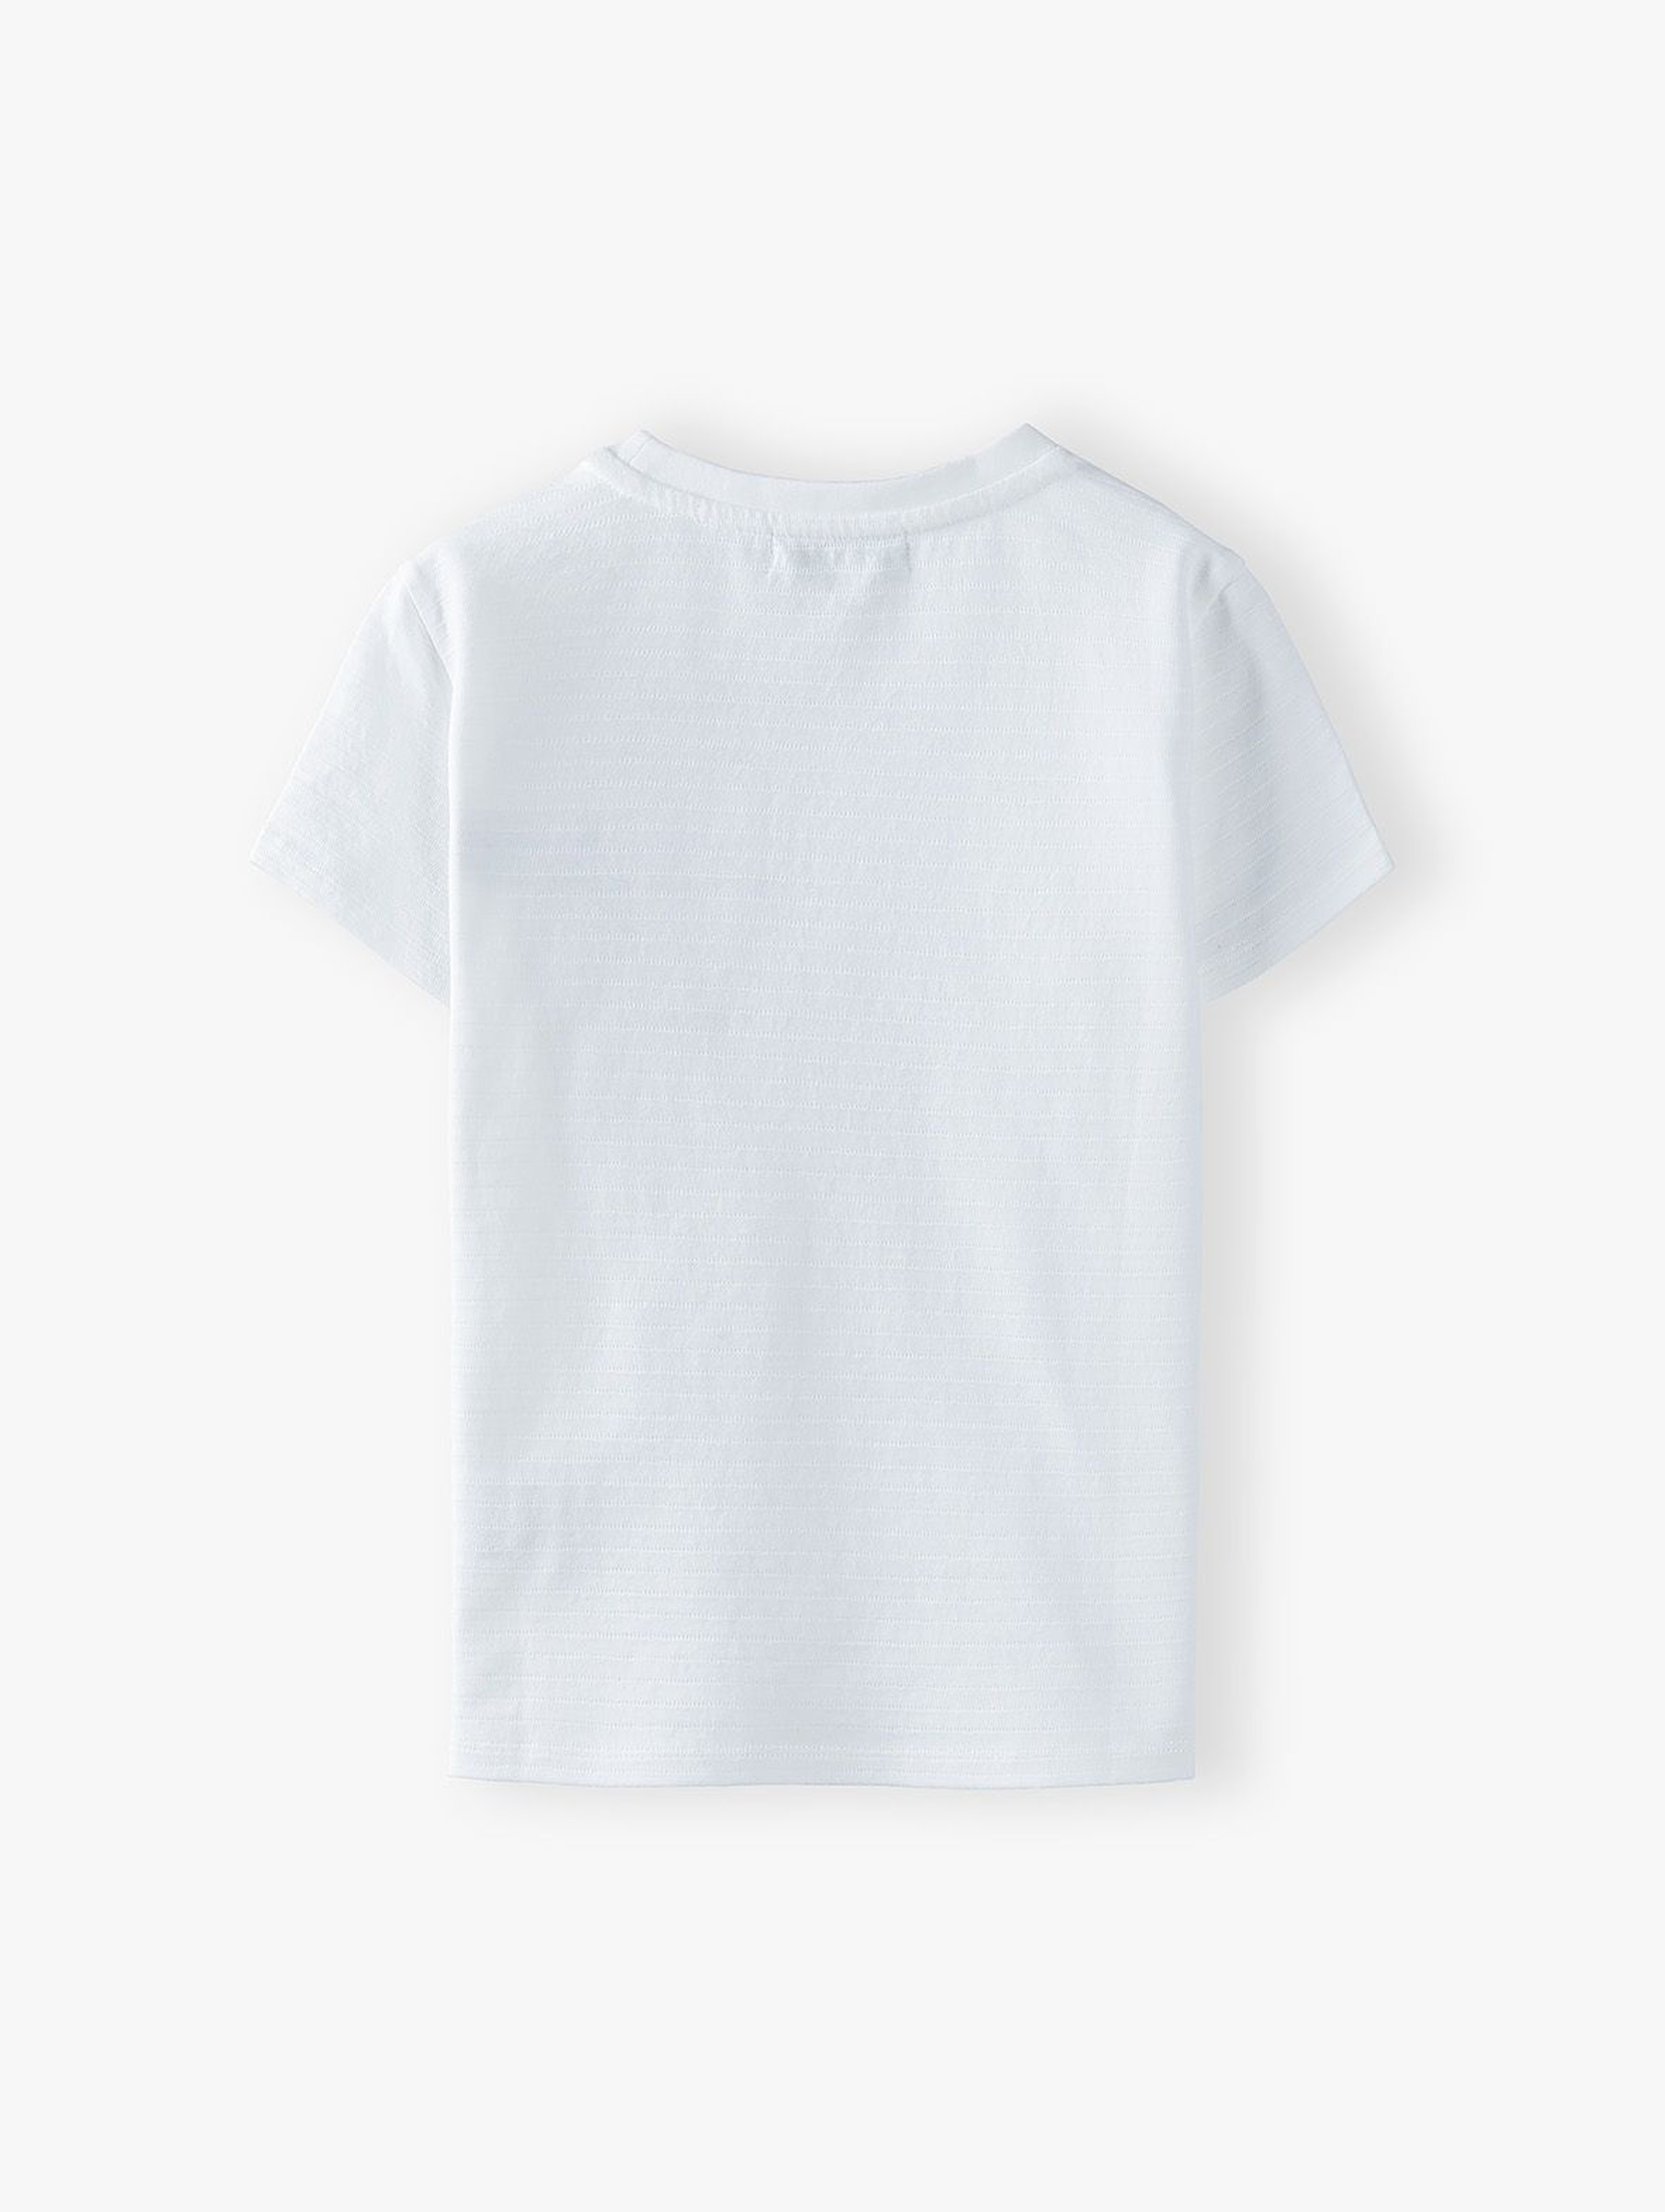 T-shirt chłopięcy bawełniany w paski - biały